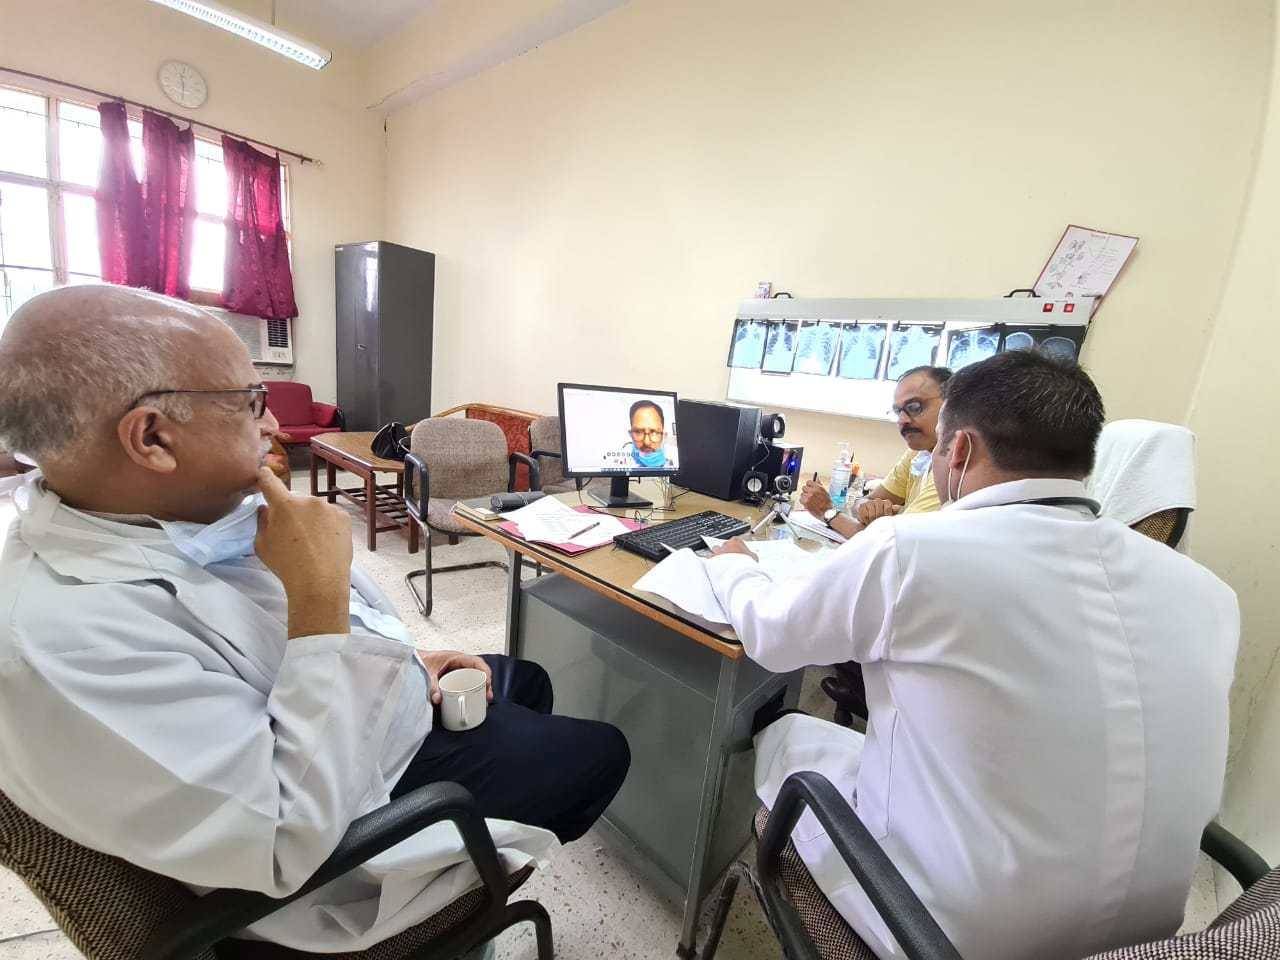 हल्द्वानी- राजकीय मेडिकल काॅलेज में (एम.डी/एम.एस.)की परीक्षा शुरू, ऐसे बरती जा रही सुरक्षा